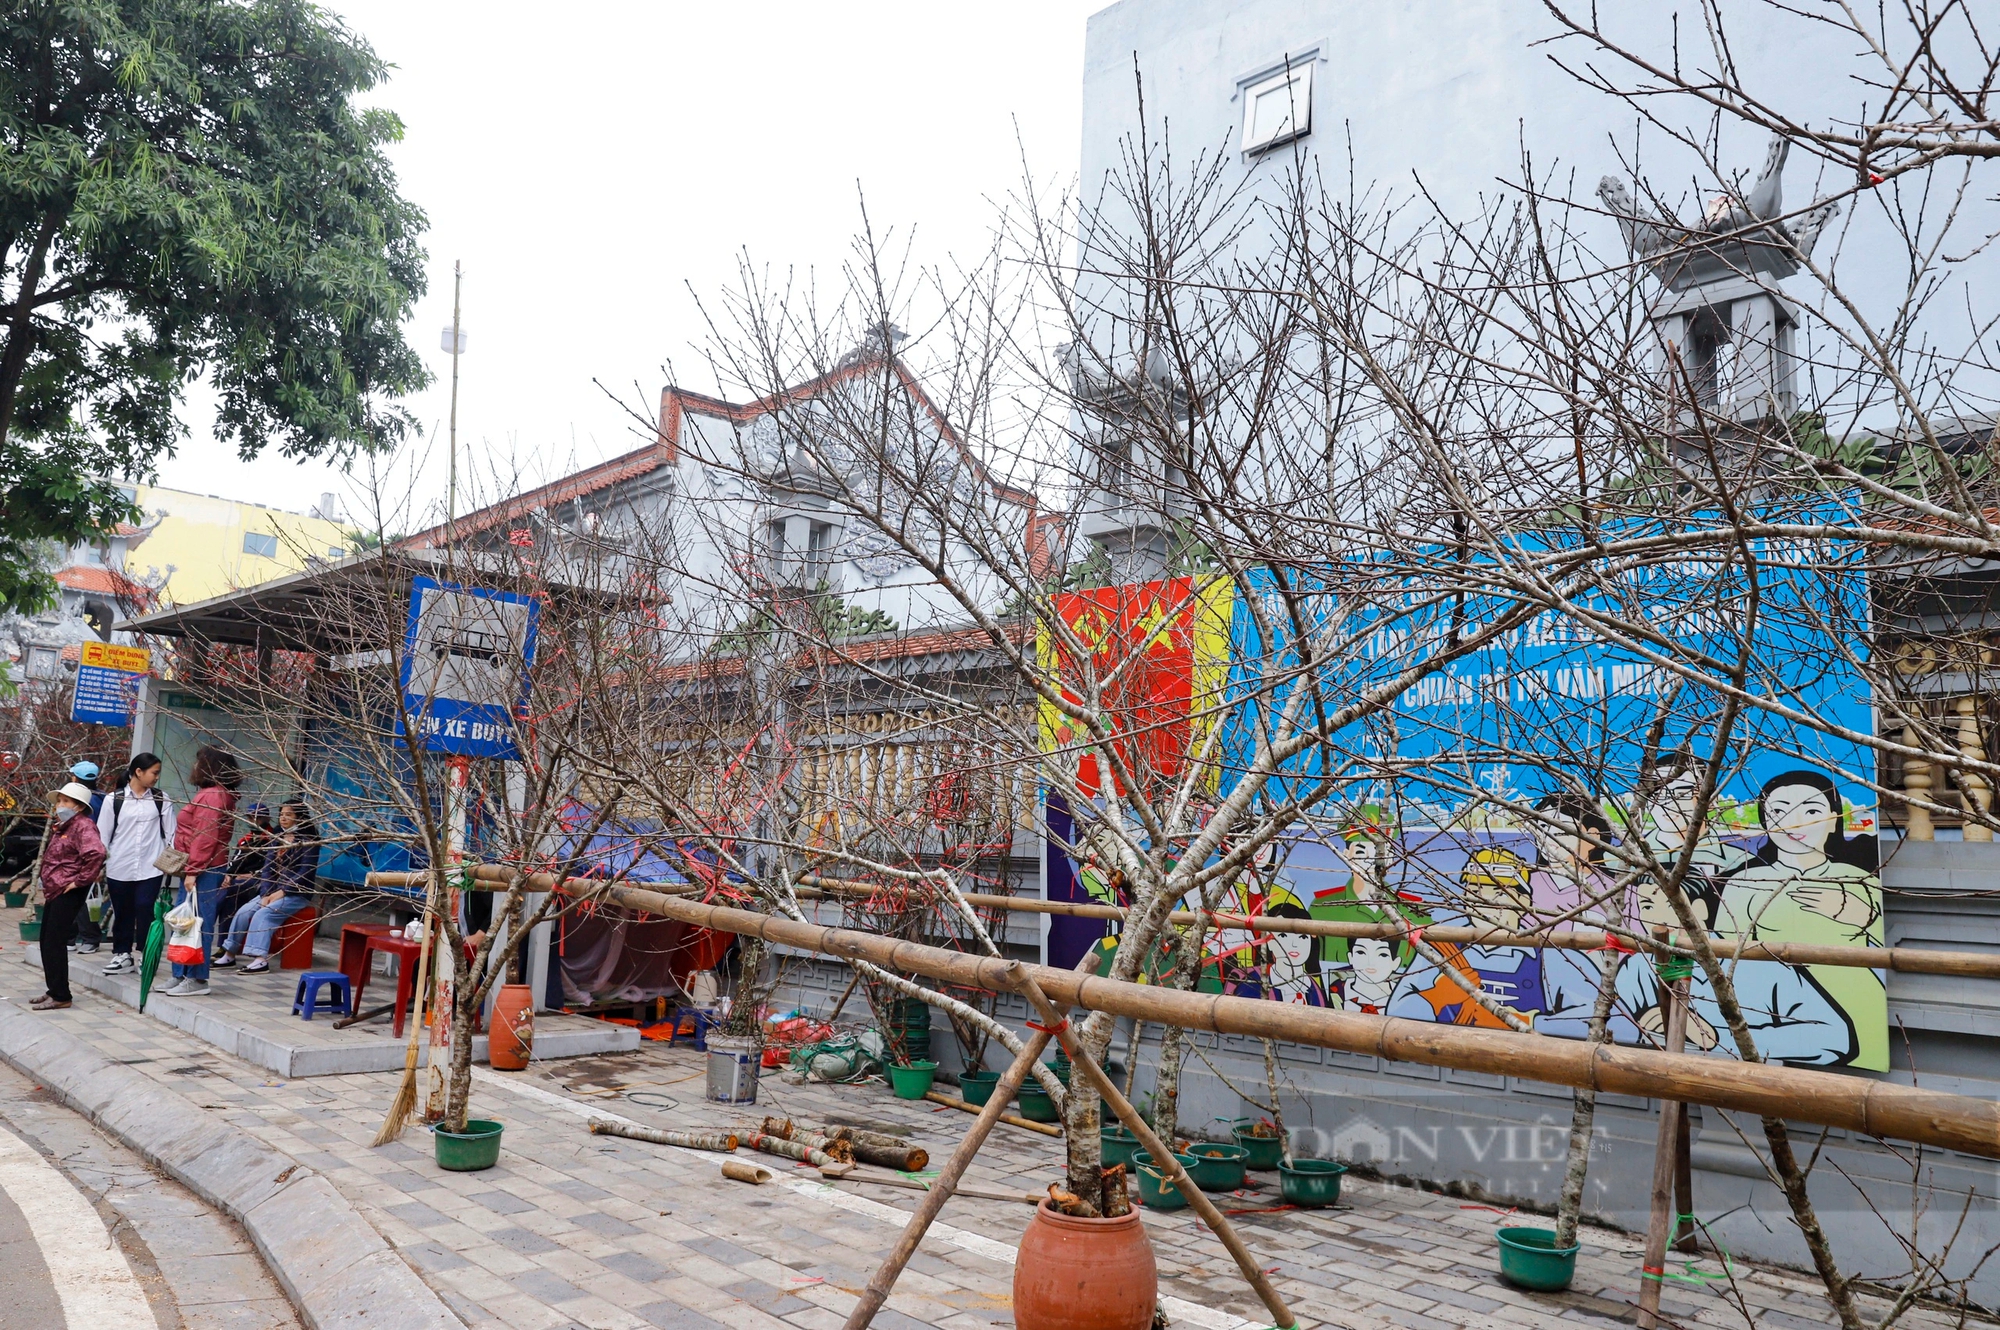 Đào chỉ dành cho khách “chịu chi, chịu chơi” bắt đầu khoe sắc trên đường phố Hà Nội- Ảnh 9.